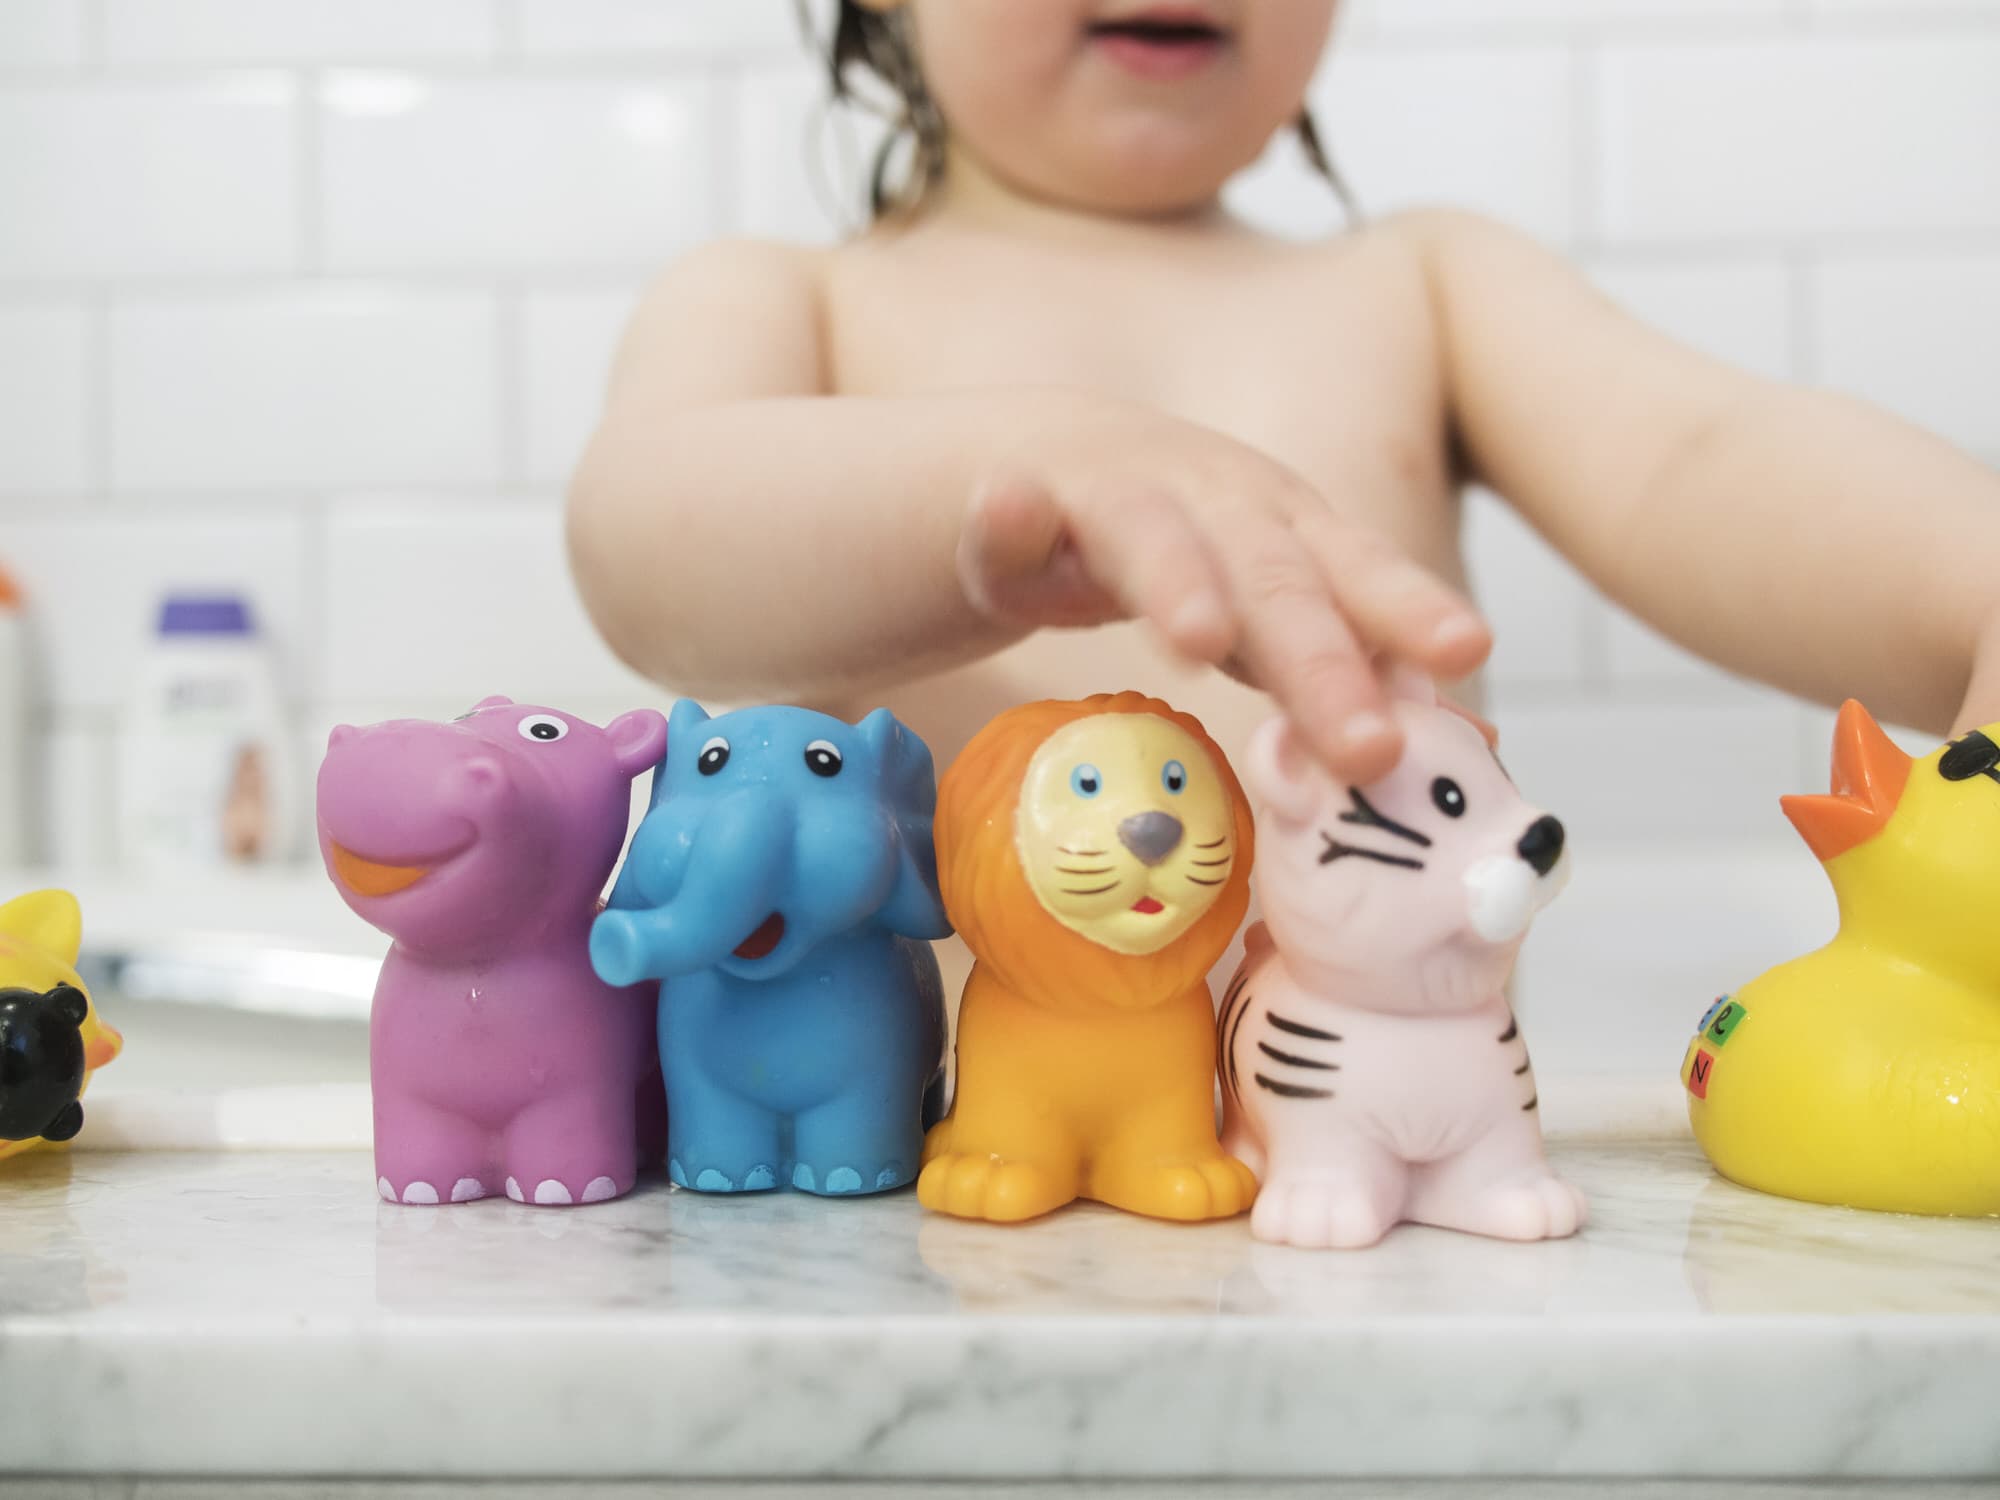 Badewanne Spielzeug Organizer Badewannennetz Aufbewahrungsnetz Baby Kinder Bad 